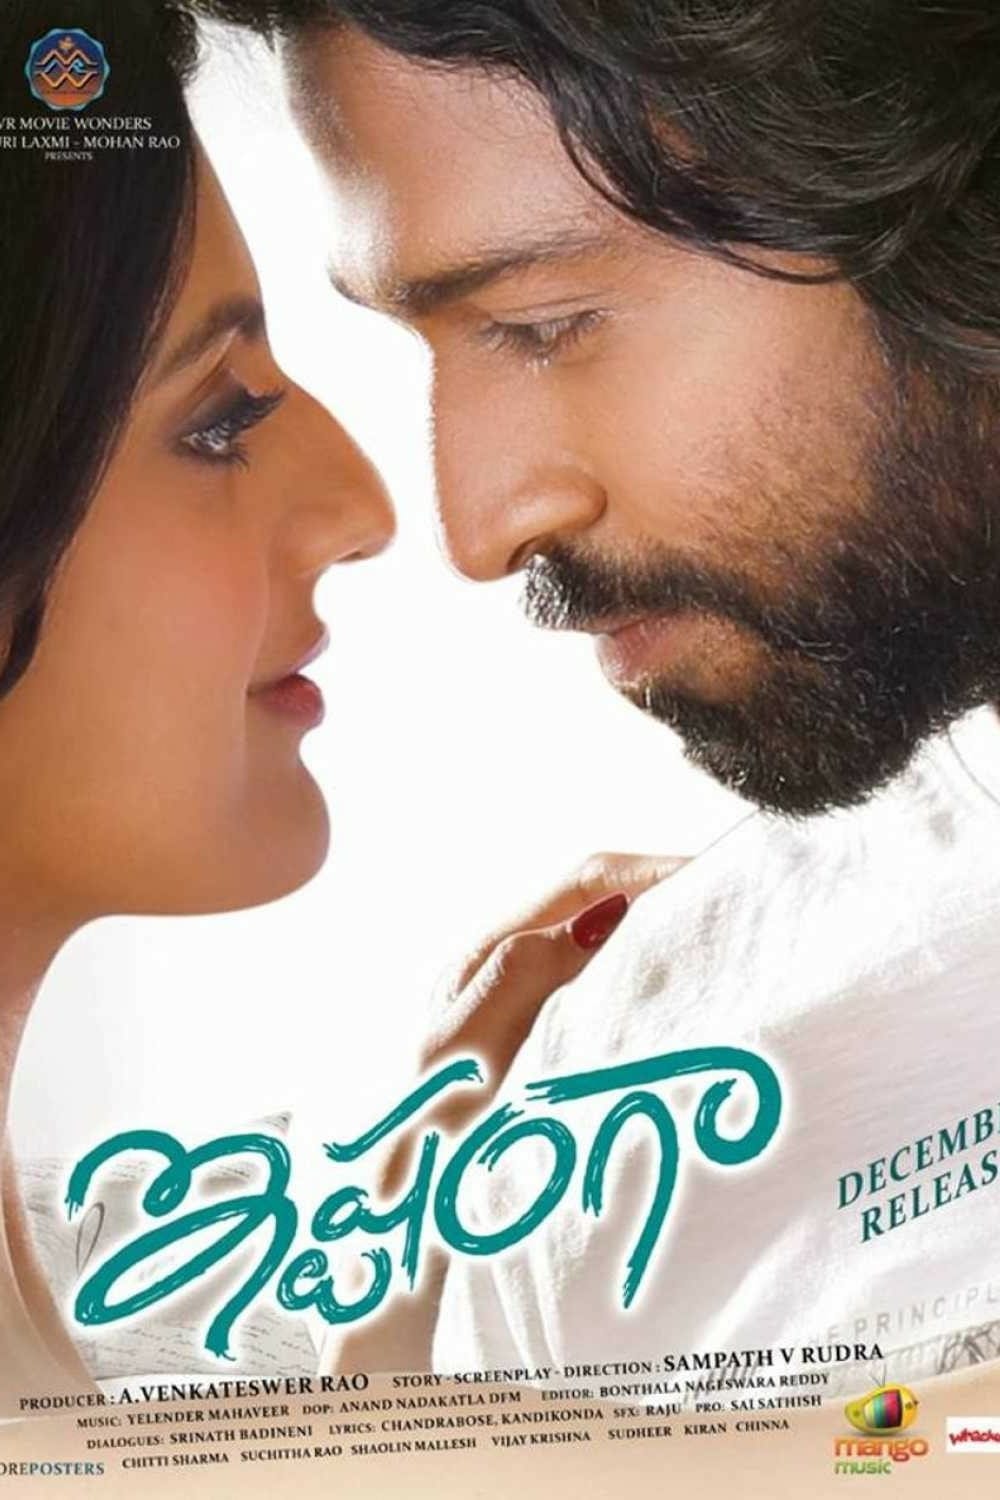 Poster for the movie "Ishtangaa"